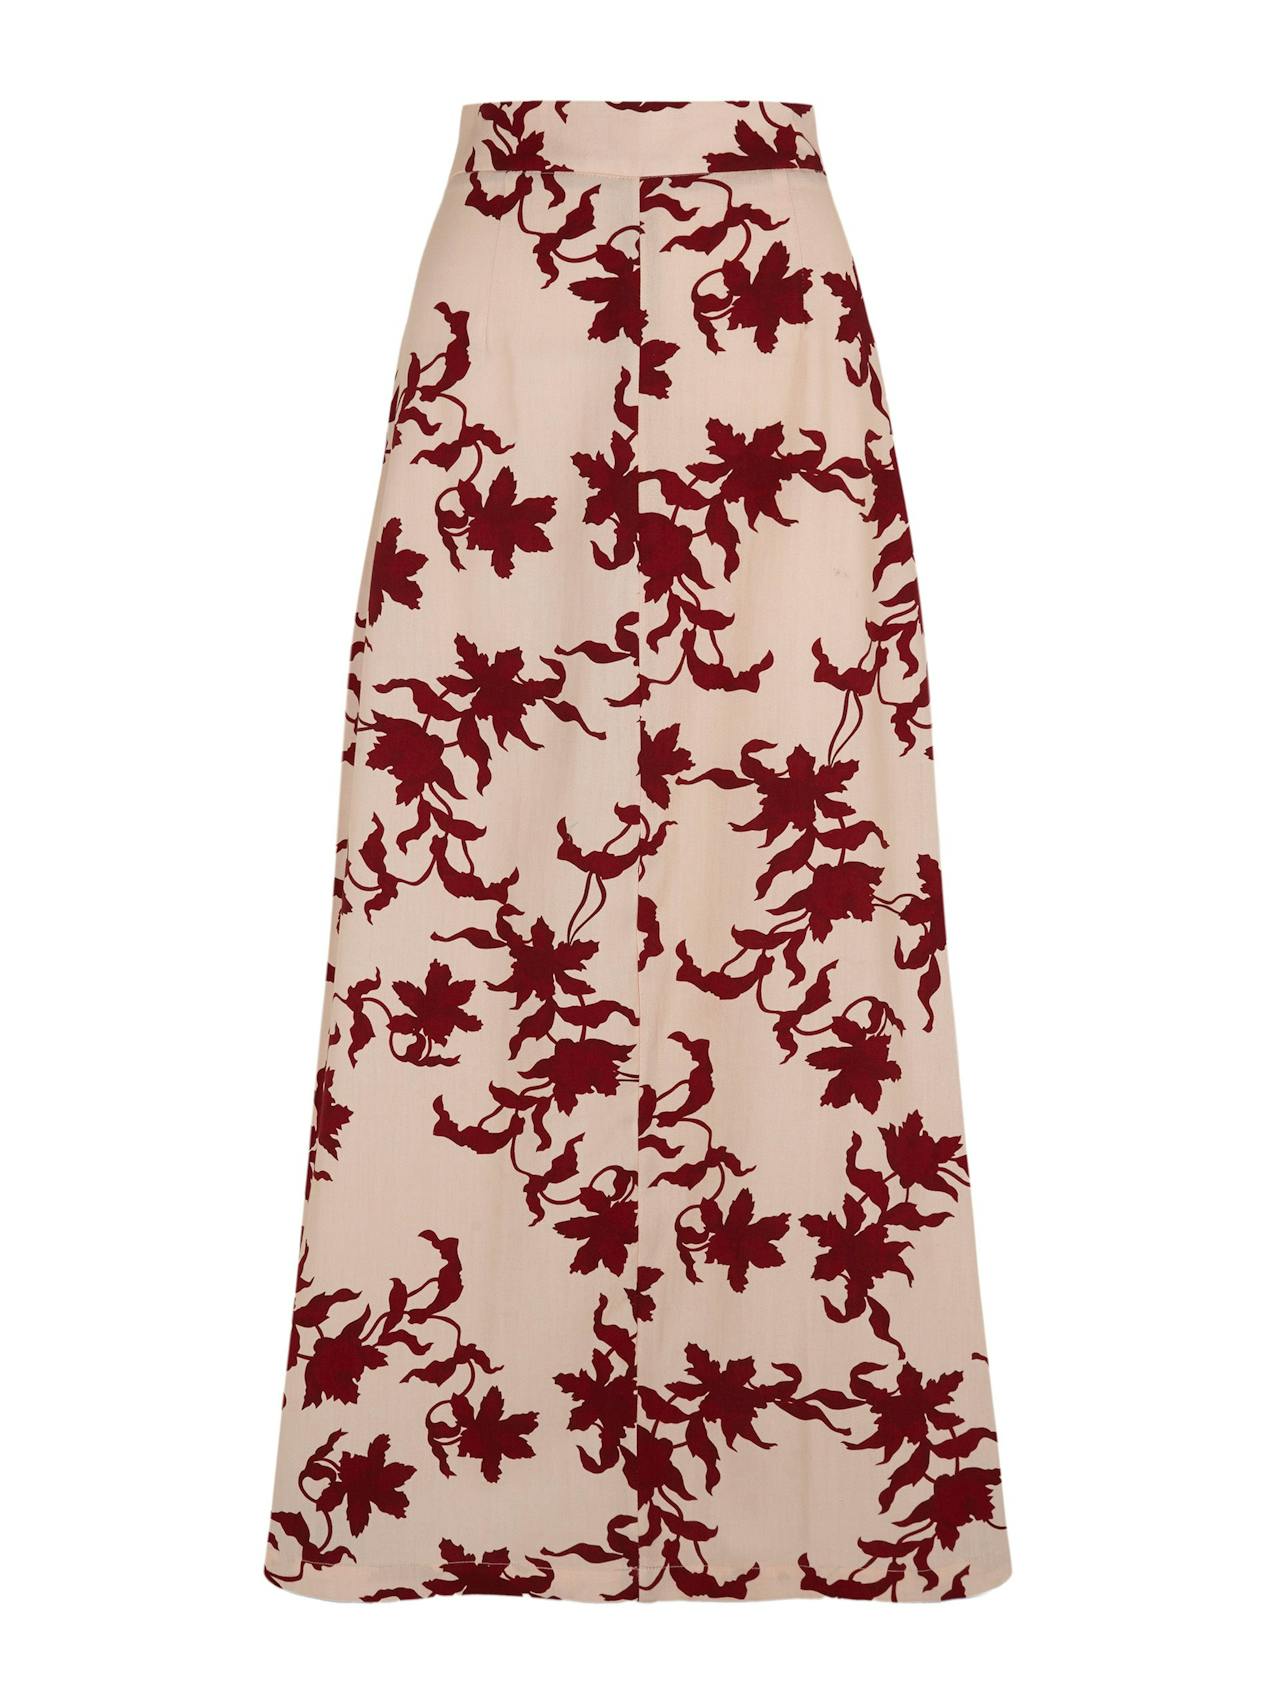 Burgundy floral print A-line skirt